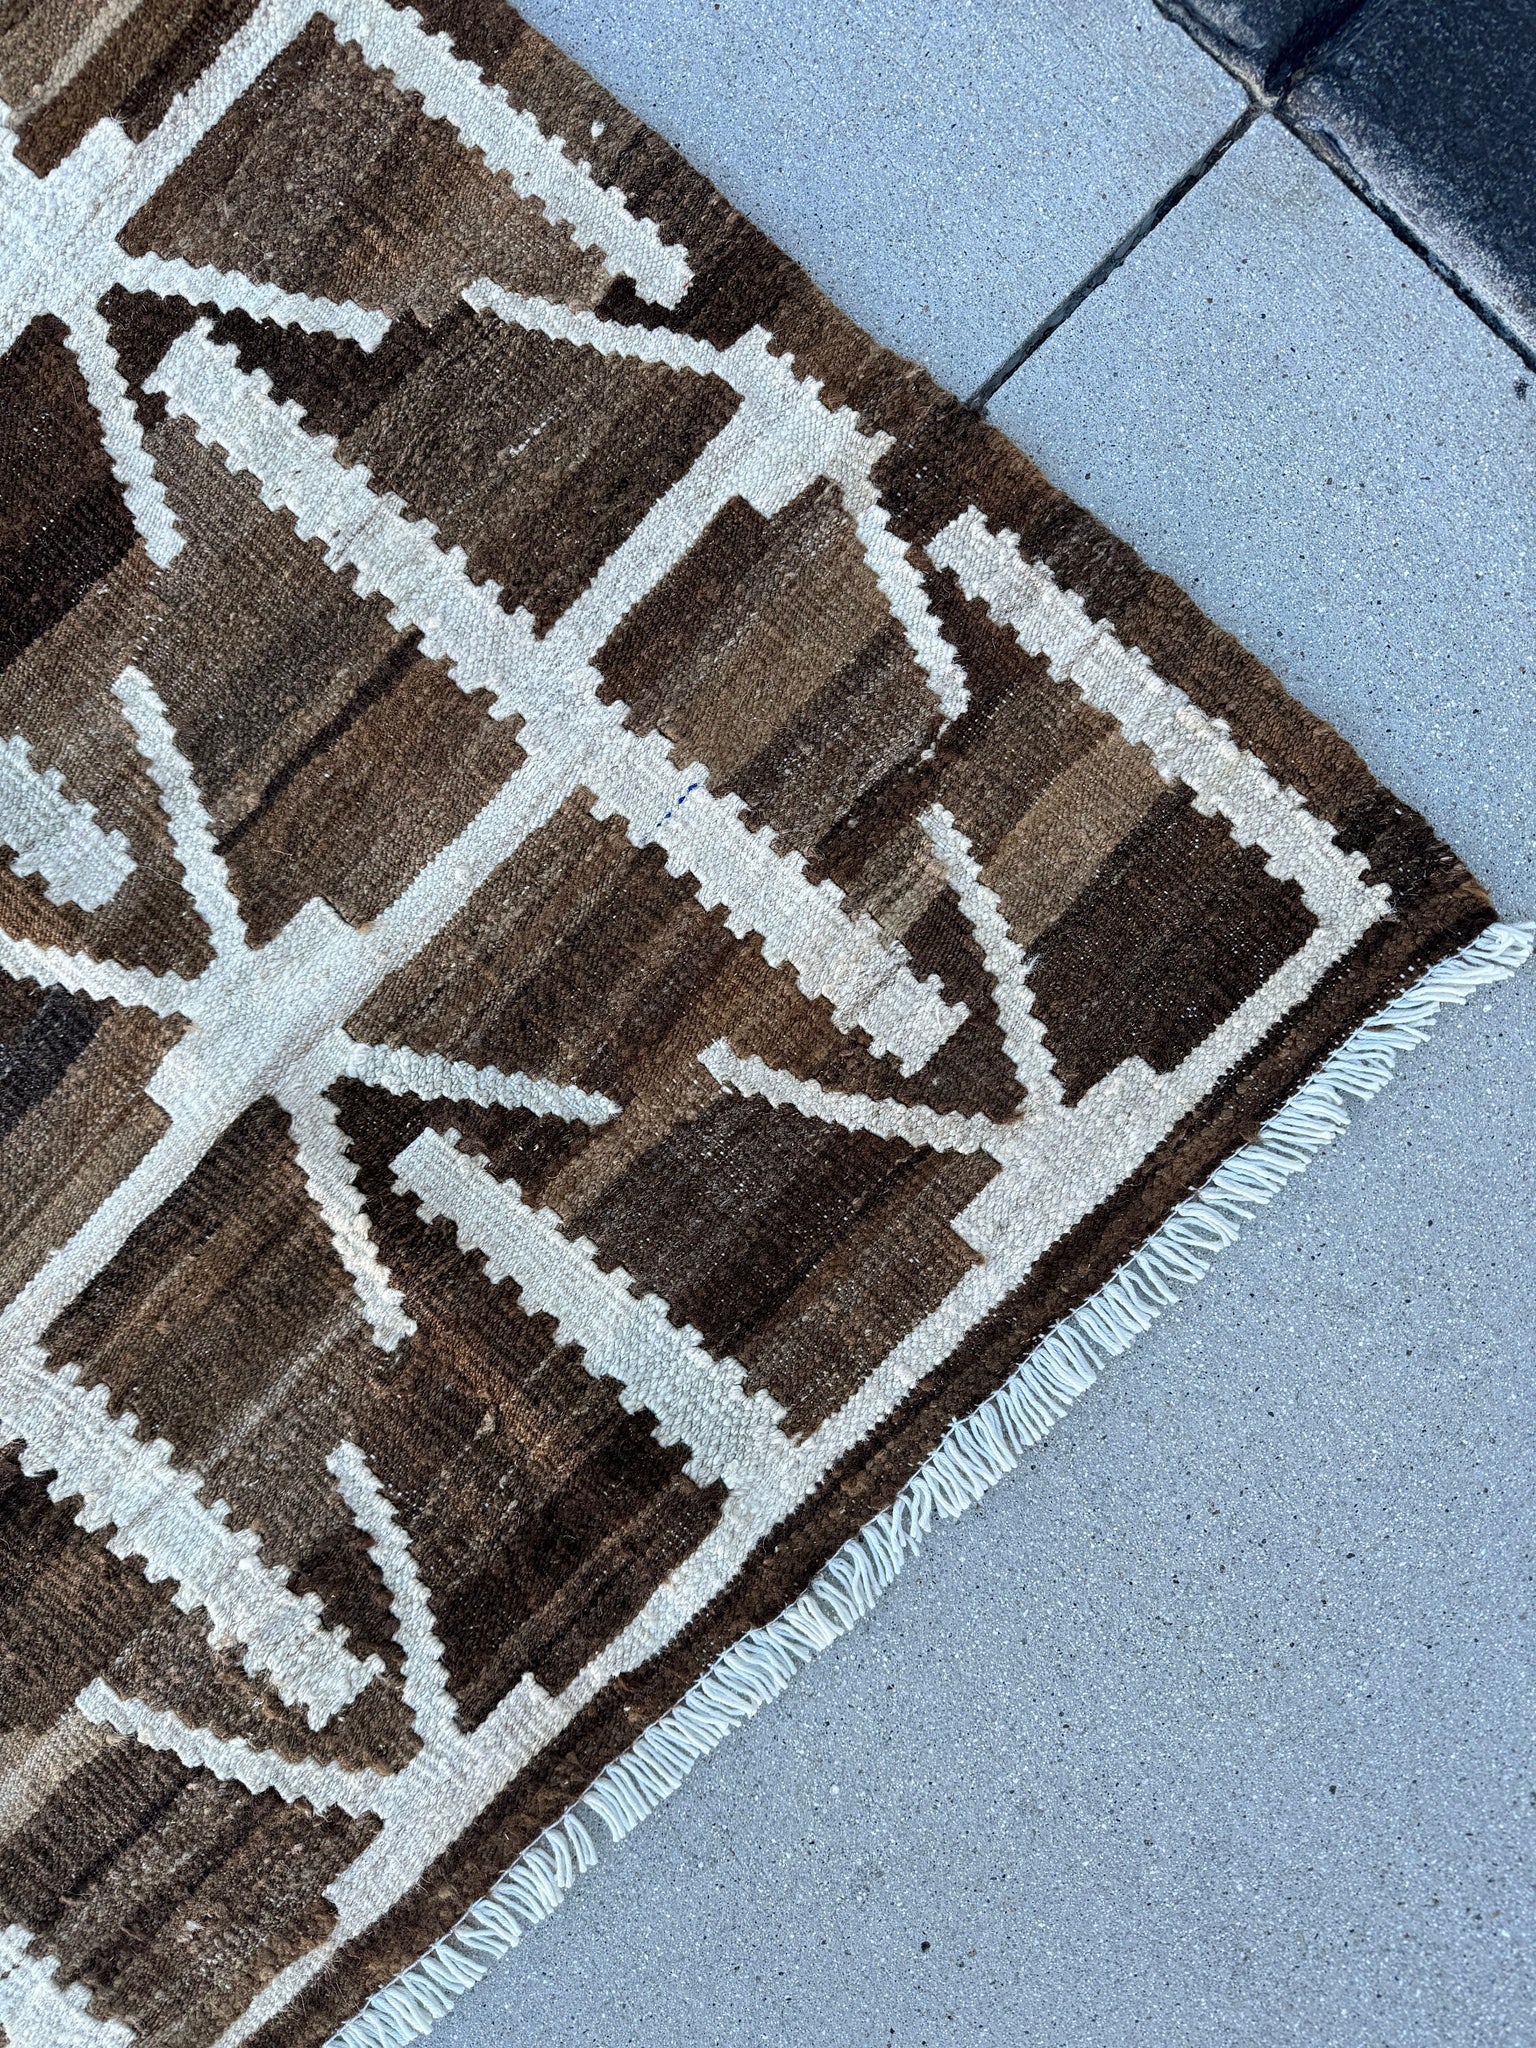 8x10 (244x251) Handmade Afghan Kilim Rug | Chocolate Mocha Coffee Brown Cream White Ivory | Geometric Wool Flatweave